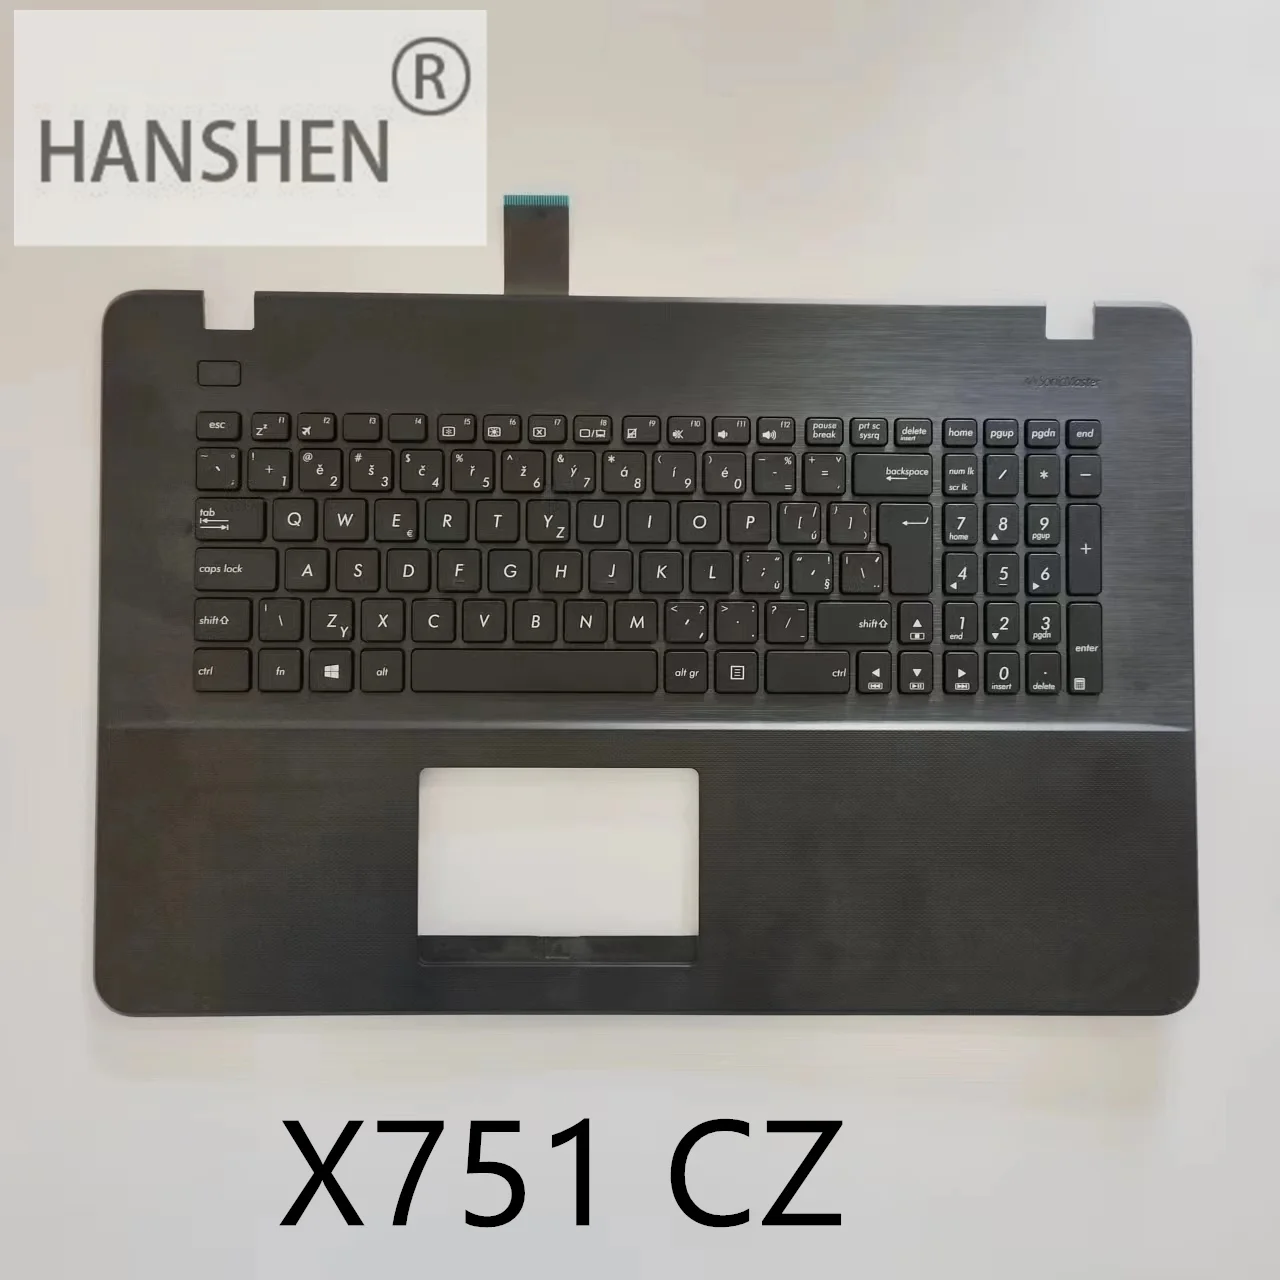 HANSEN UK CZ FR SL Новые клавиатуры с подставкой для рук для ноутбука Asus A751 x751 x751l x751lk x751m x751ma x751s x751y Черный C Крышкой